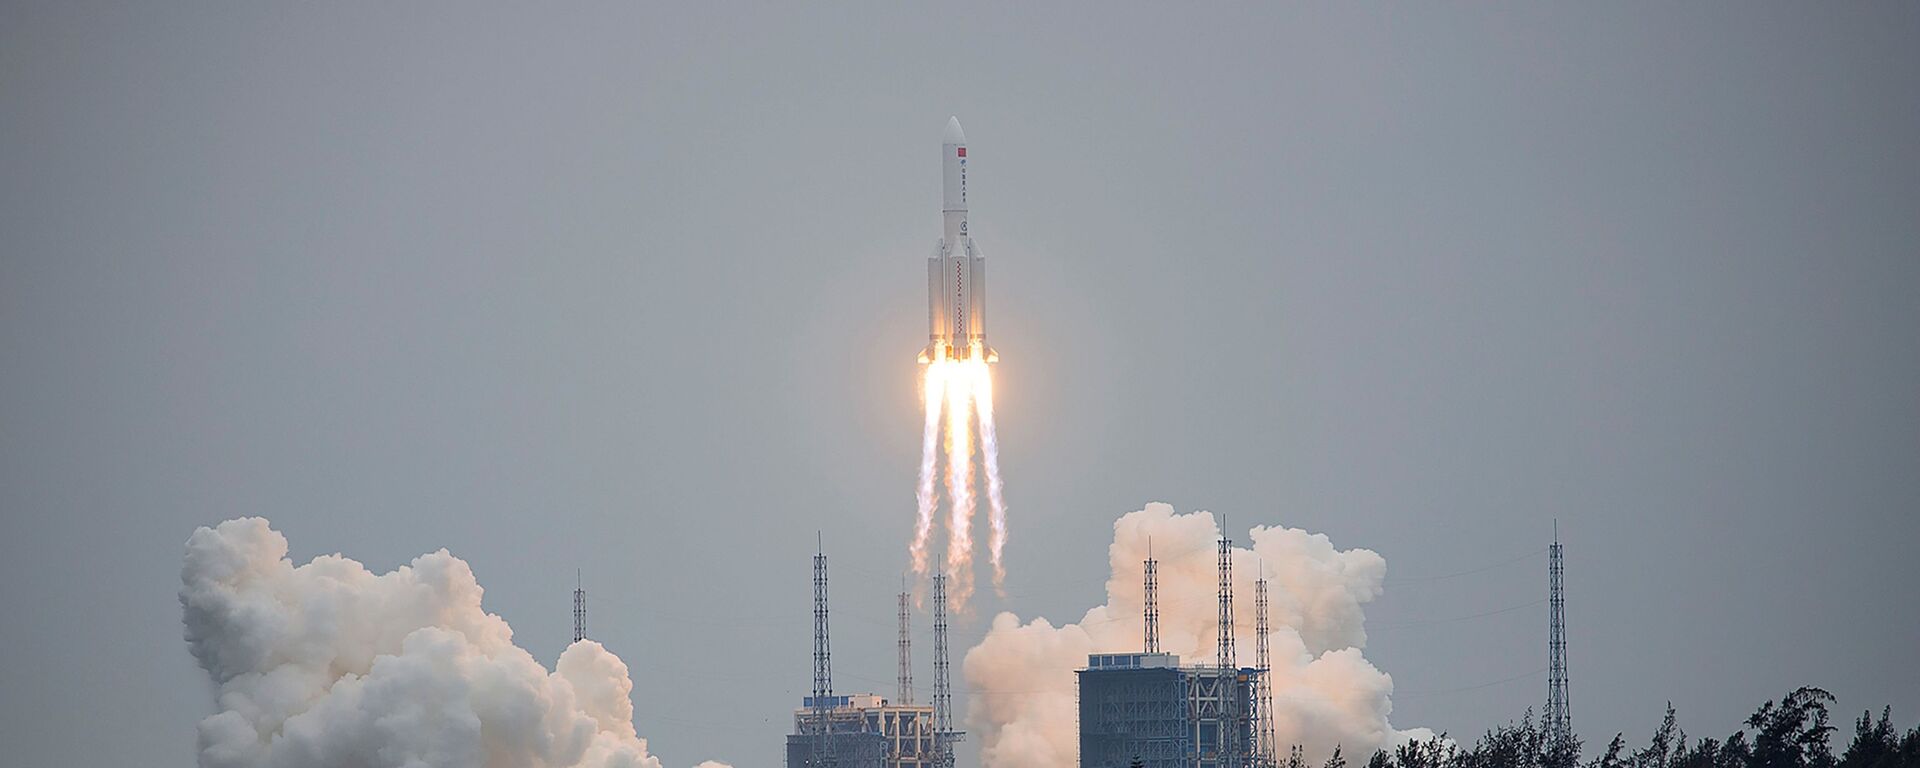 Кина лансирала у свемир беспилотни модул  - Sputnik Србија, 1920, 29.04.2021